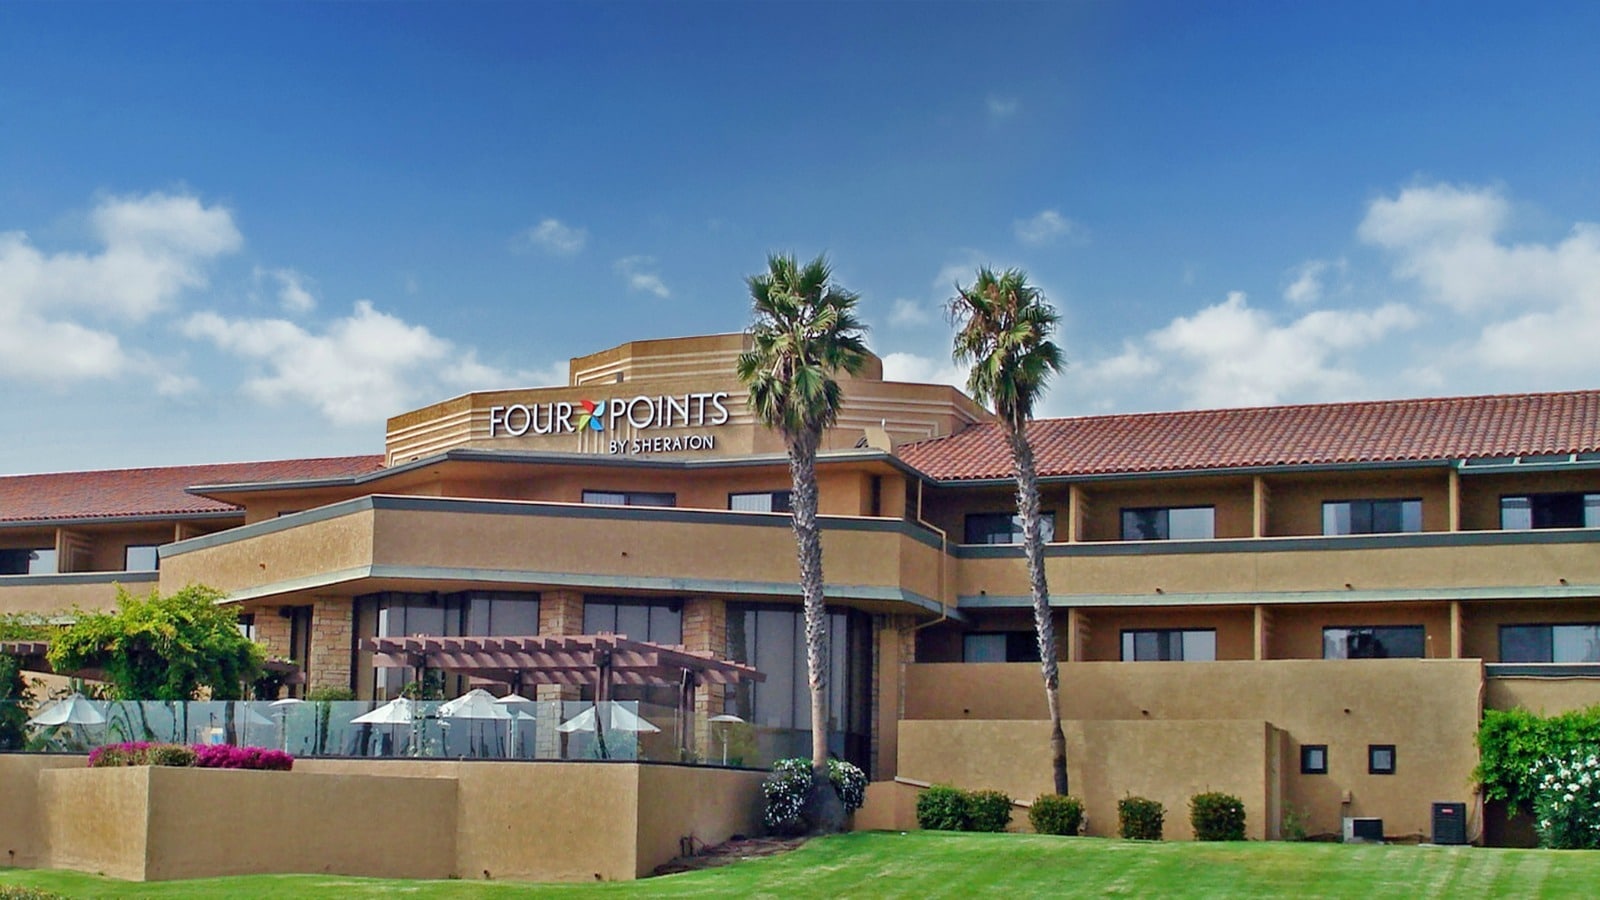 Hotels at Ventura Harbor Village